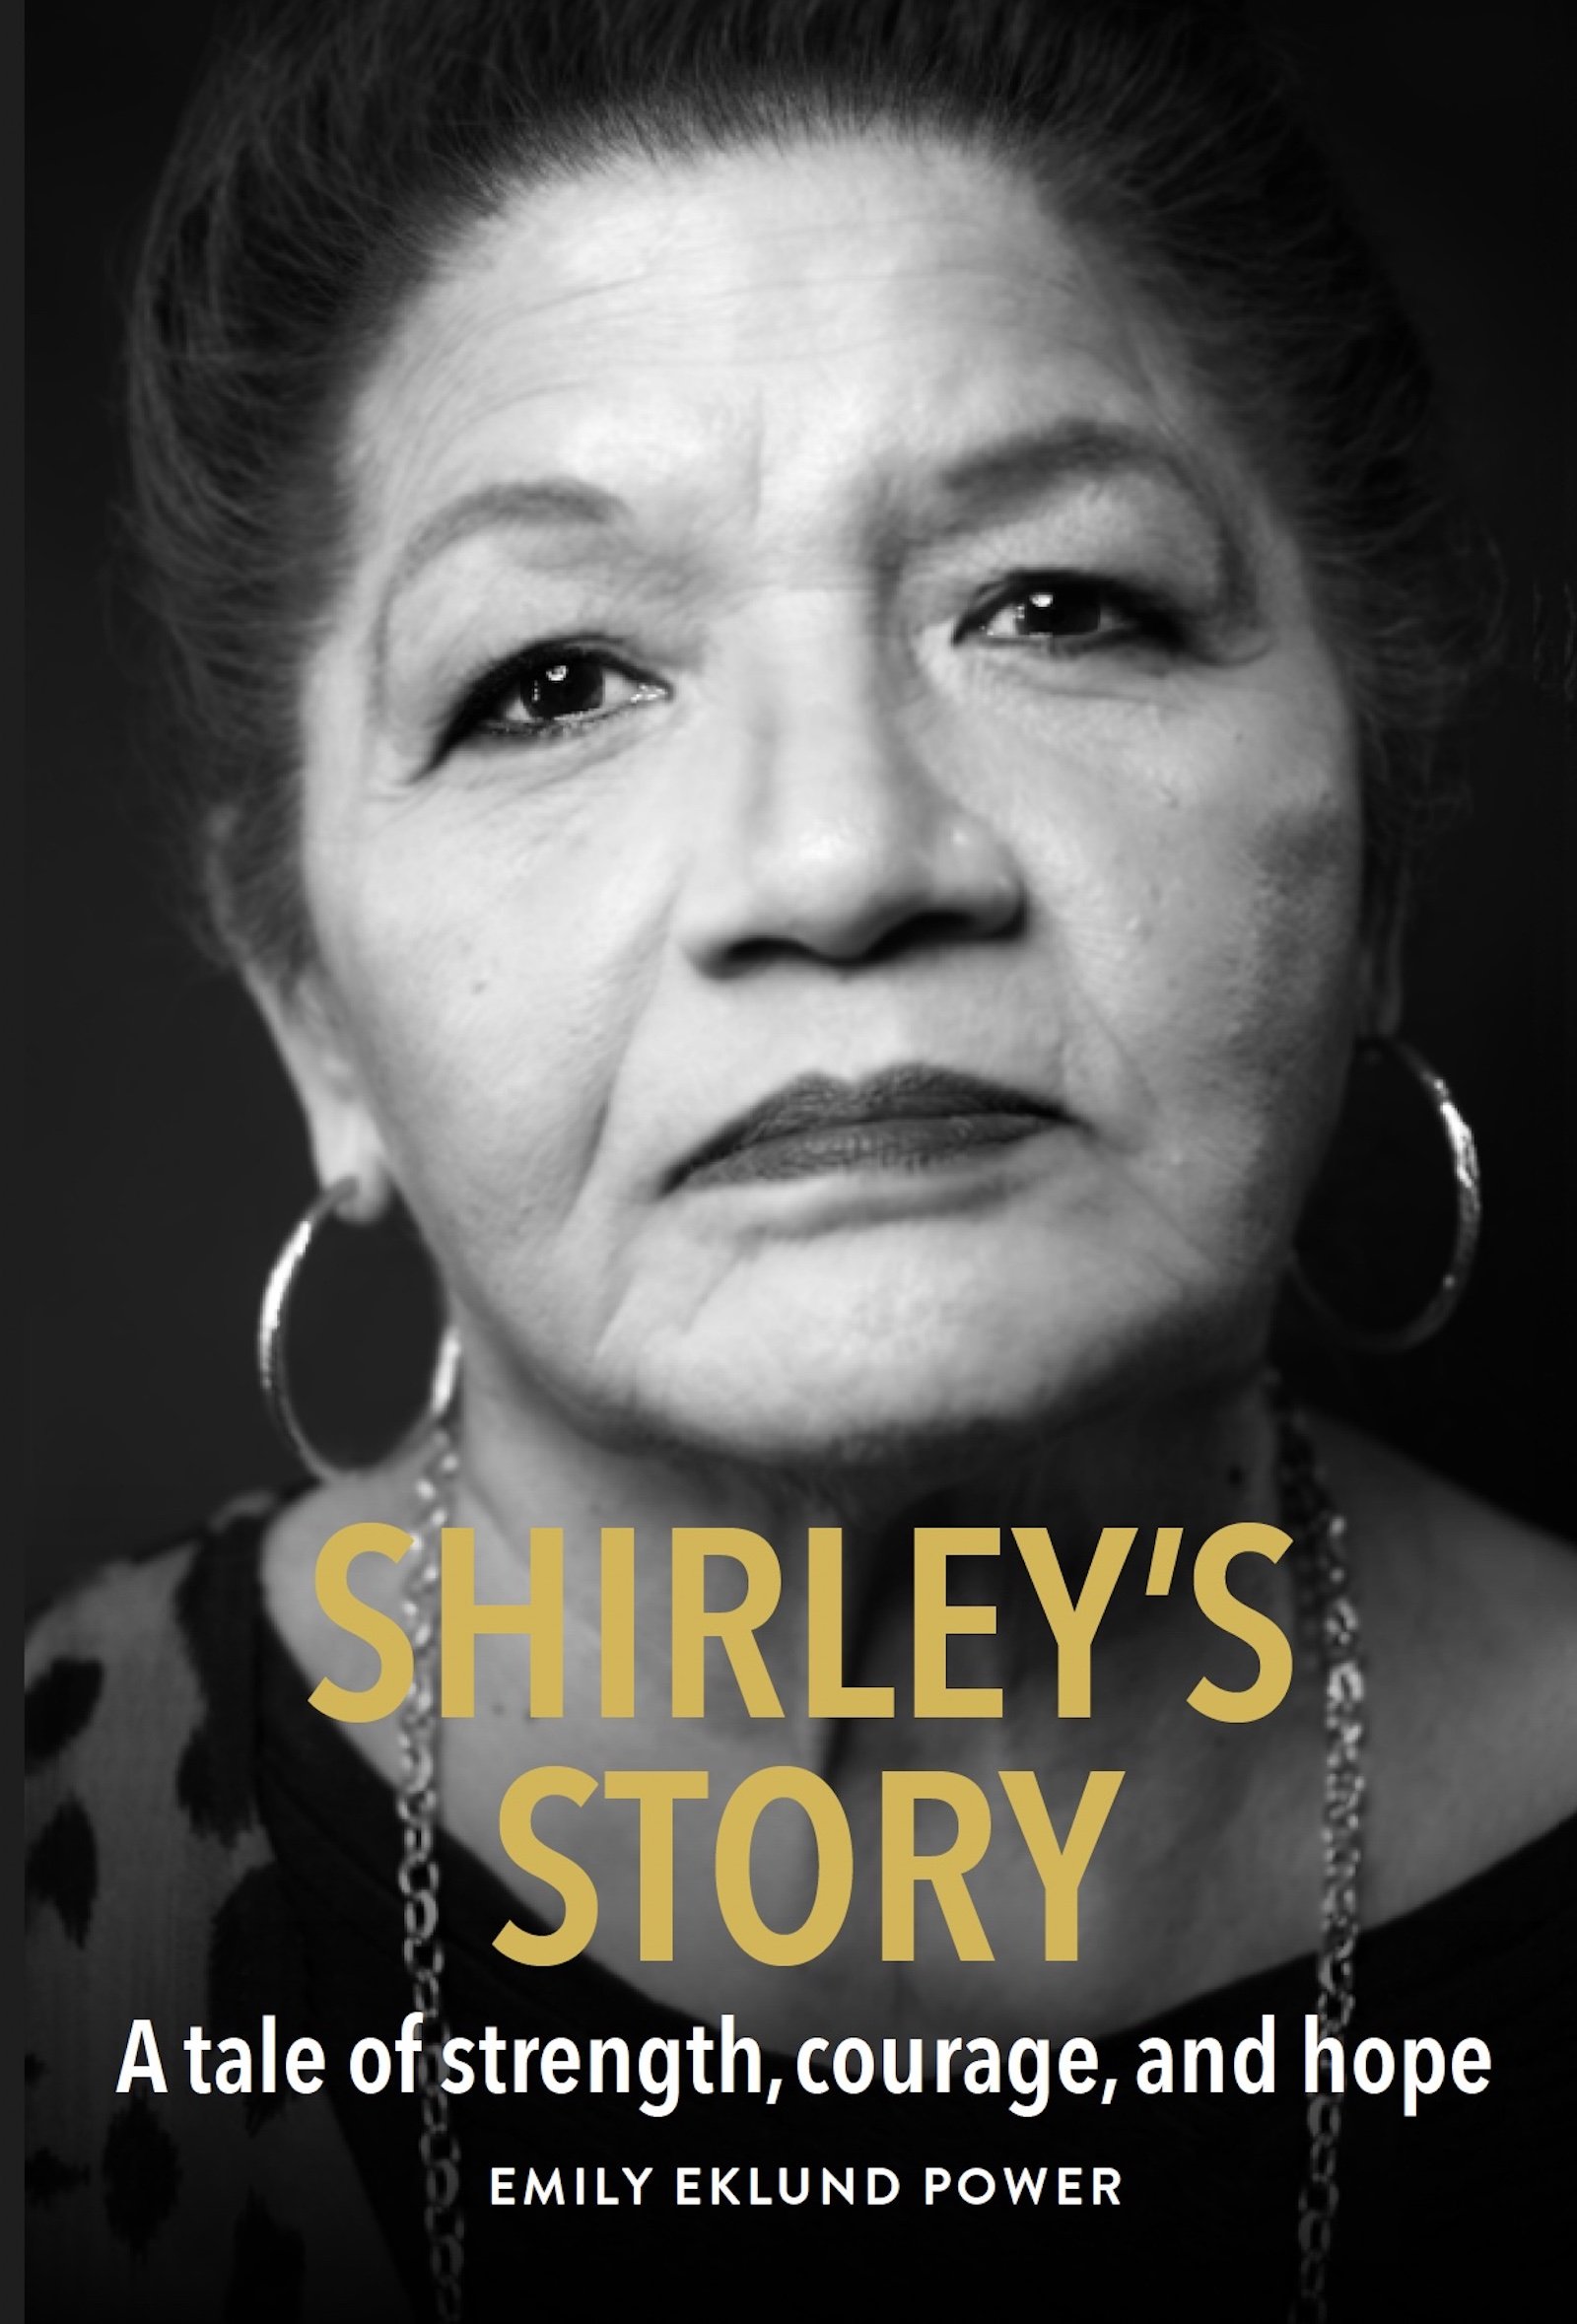 Cover - Shirleys Story.jpg